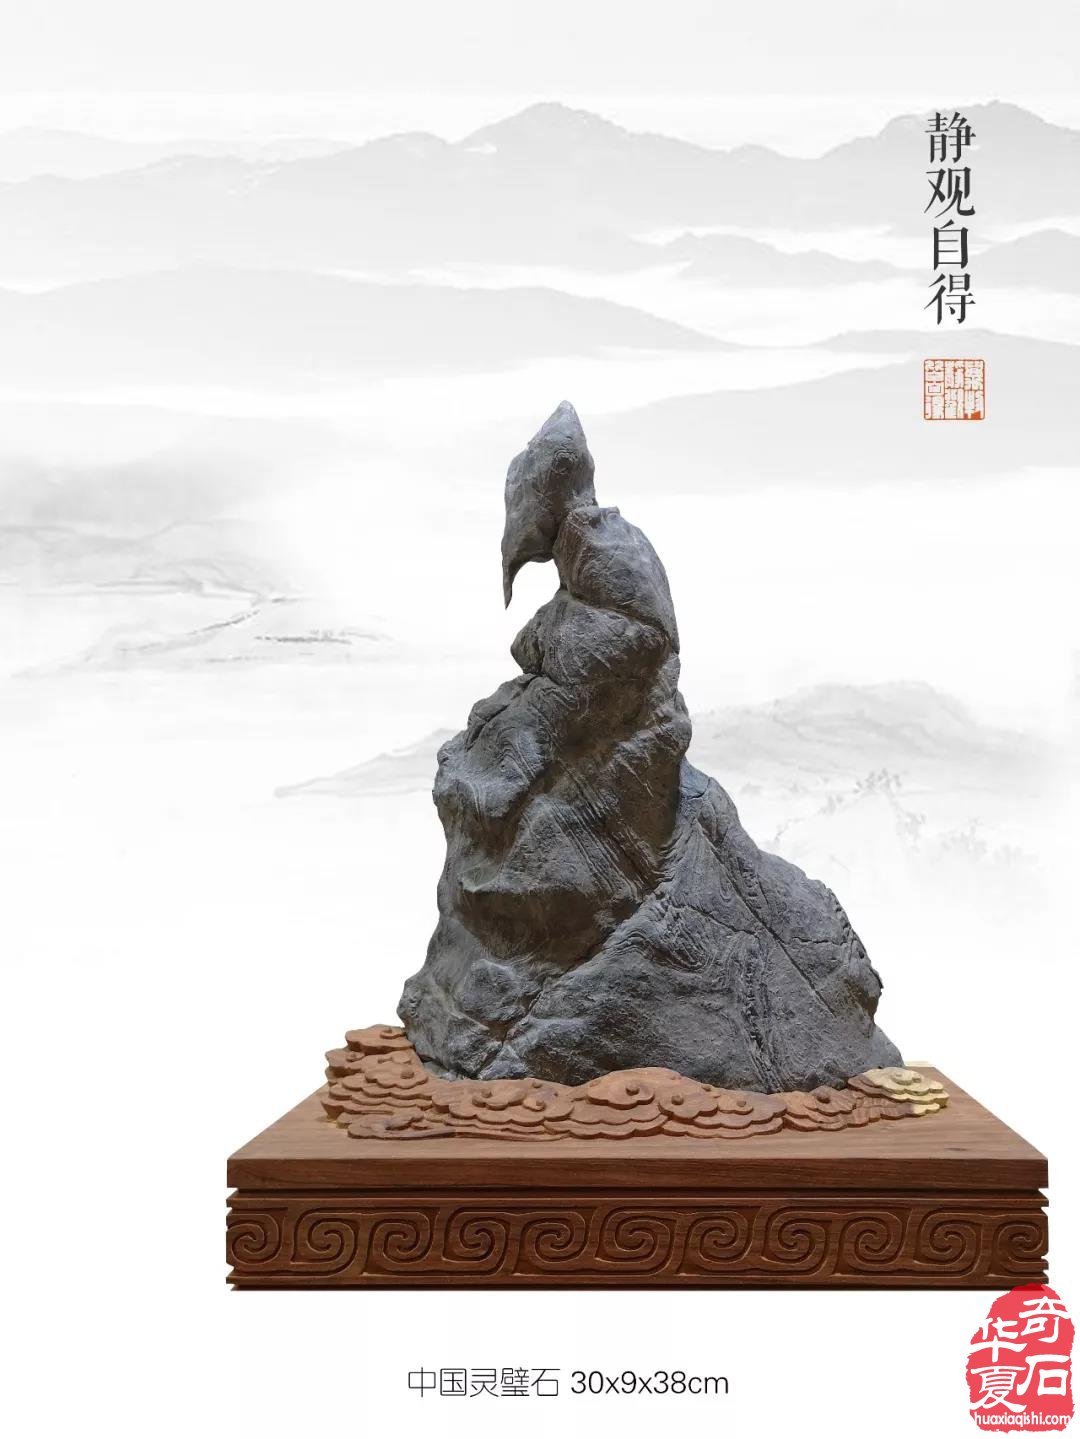 观象博物馆·中国赏石理论建构学术研讨会暨灵璧石精品展